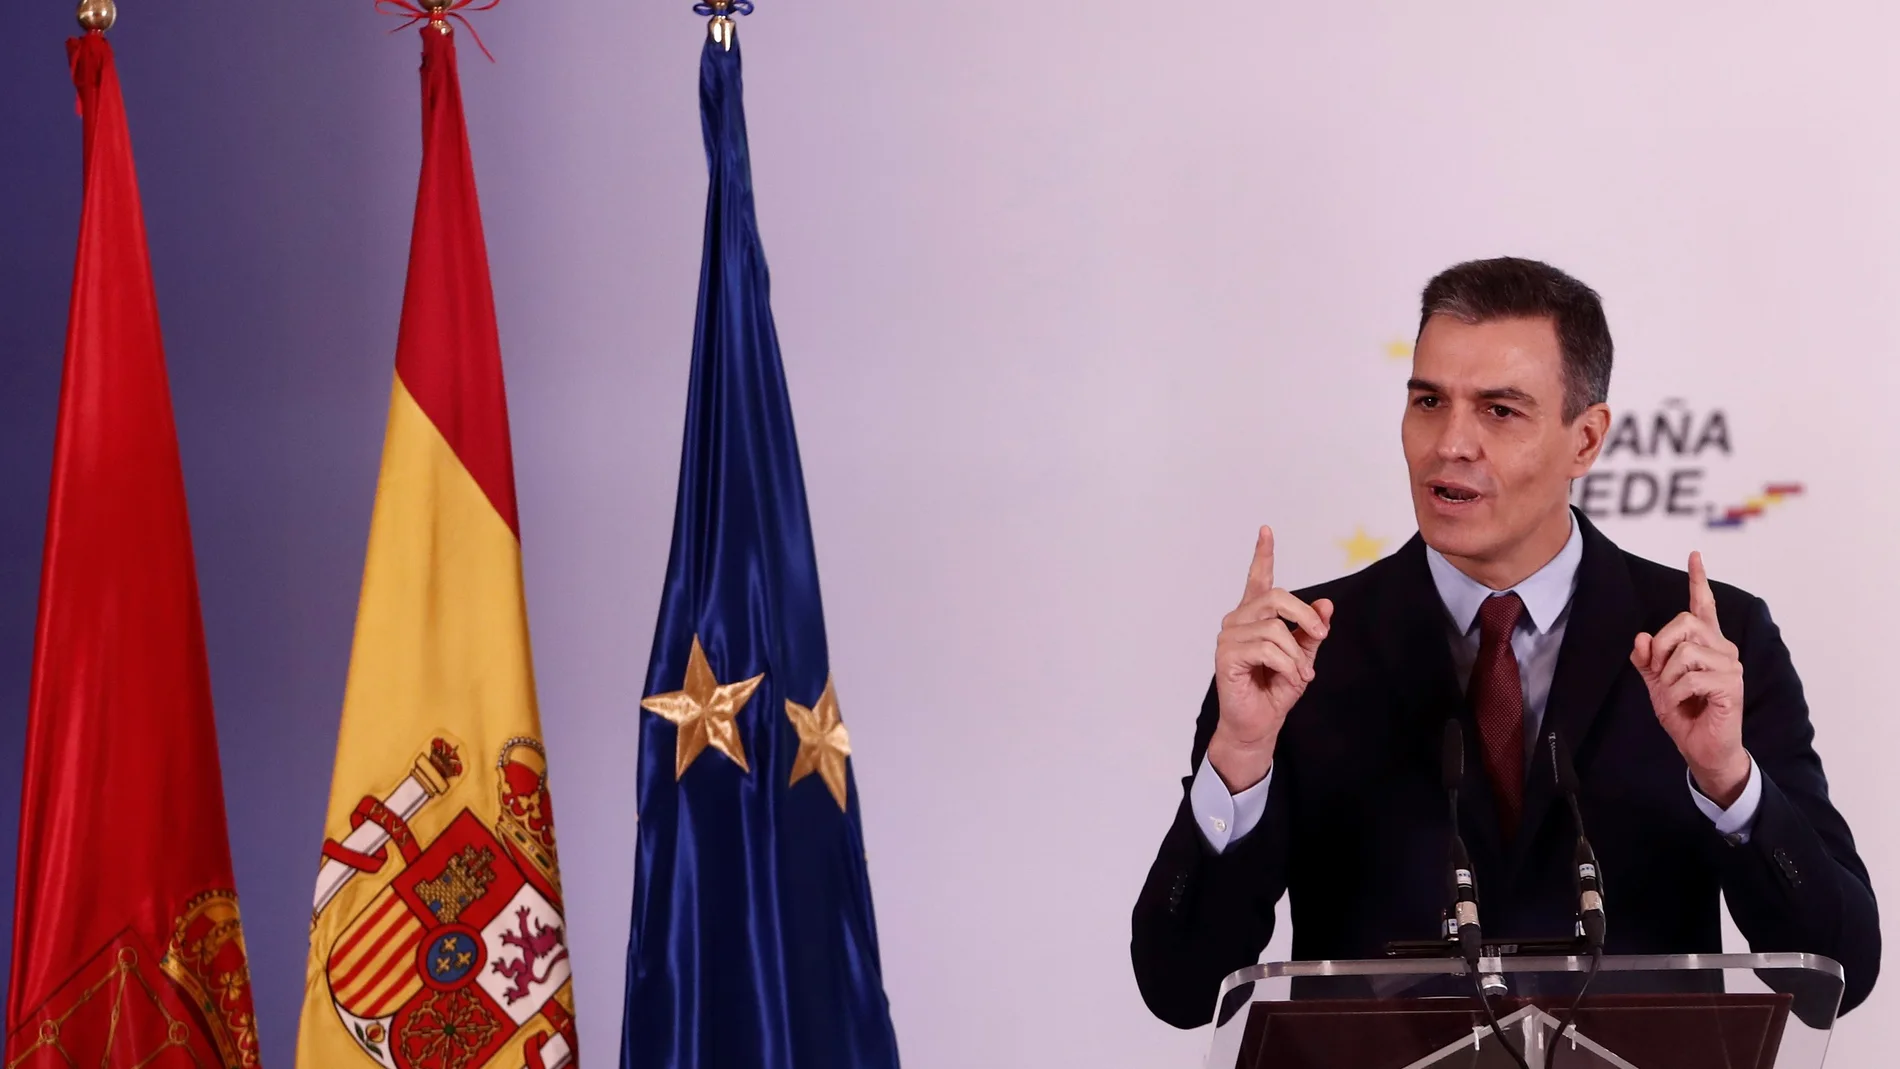 El presidente del Gobierno, Pedro Sánchez, durante su intervención tras la reunión mantenida este viernes con la presidenta de Navarra, Maria Chívite en el palacio de Congresos Baluarte